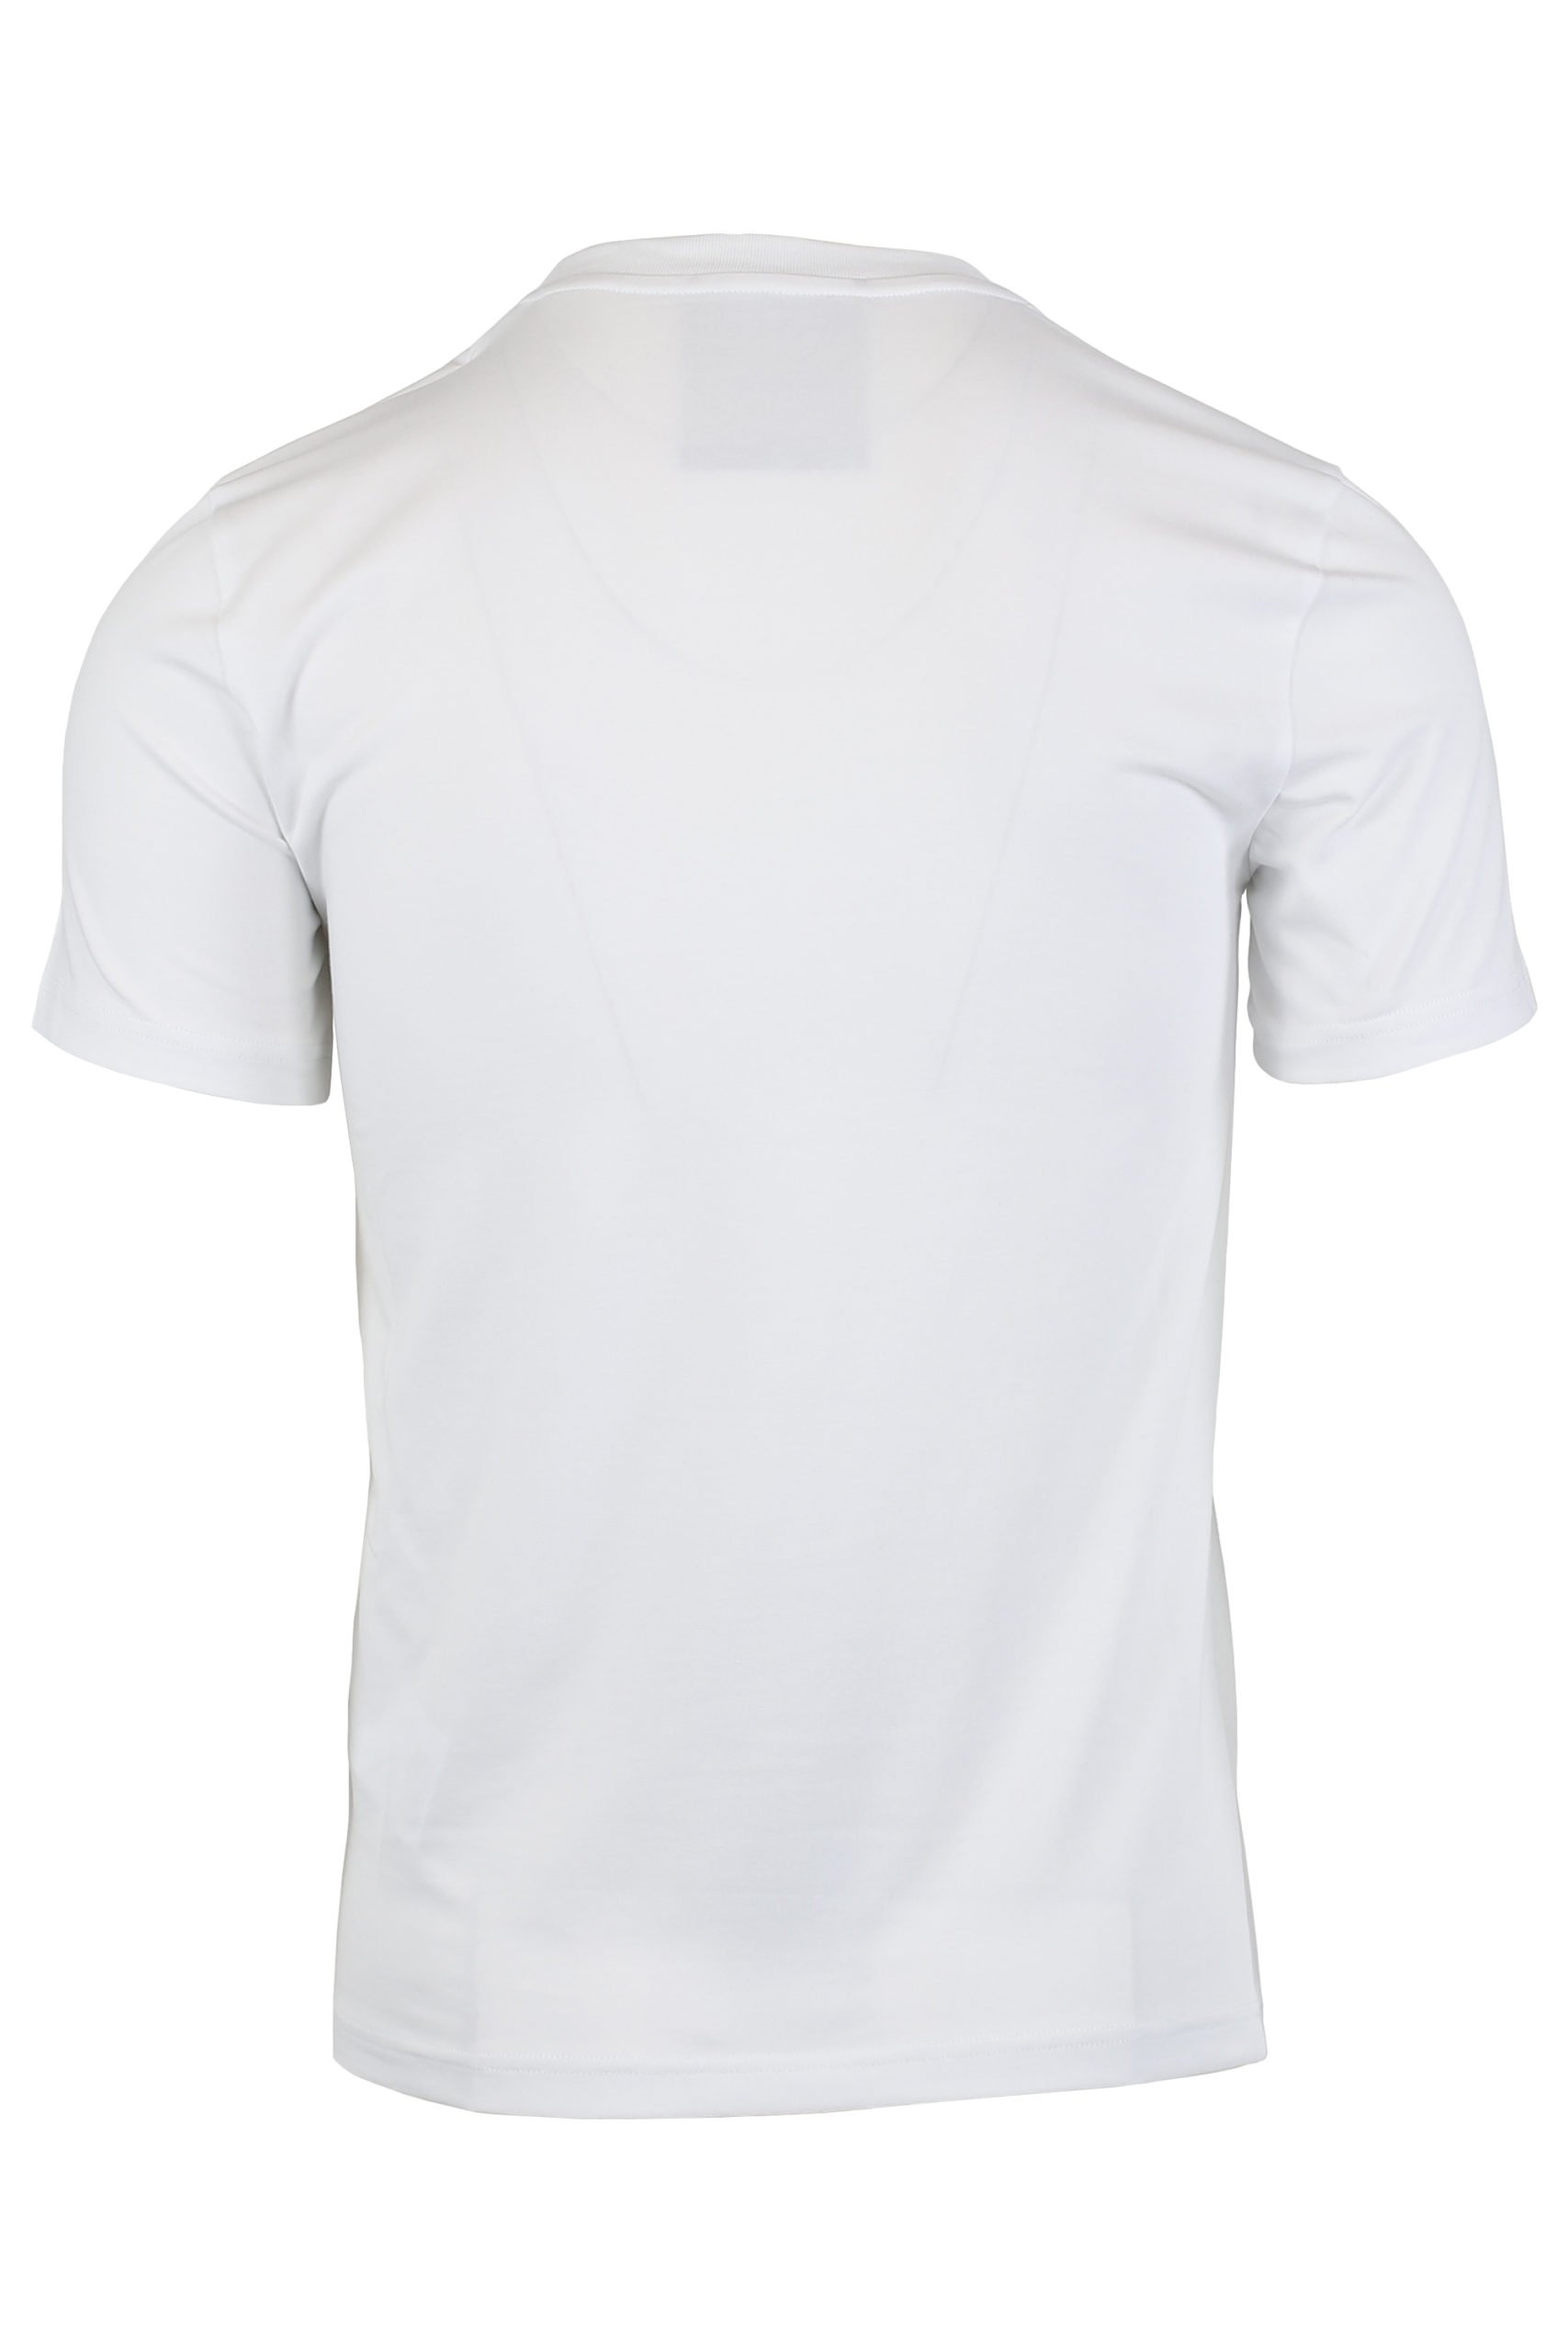 Nublado Ordenanza del gobierno Motivar Moschino - Camiseta blanca logo en color oro - BLS Fashion